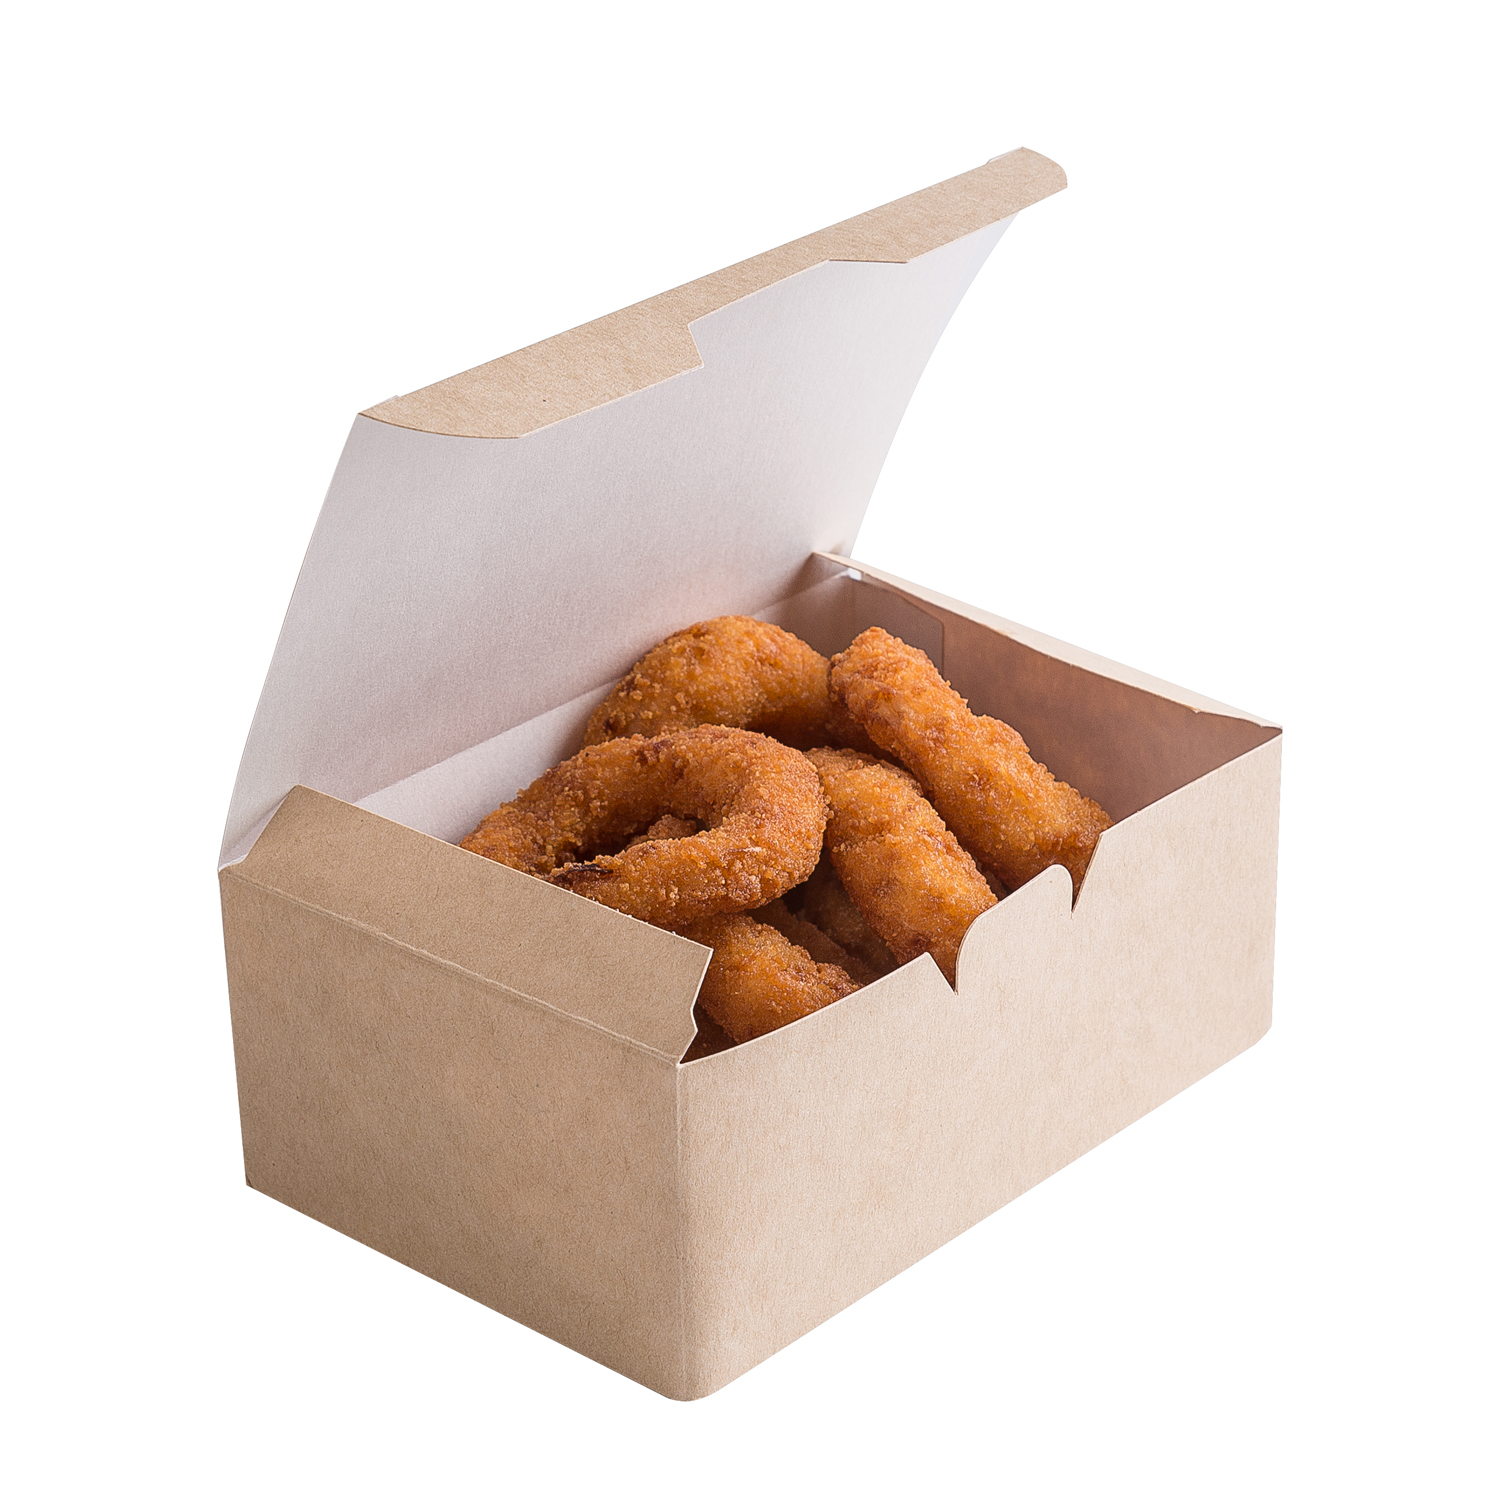 OSQ FAST FOOD BOX L Упаковка для нагетсов/крыльев/фри 15,0х9,1х7,0см